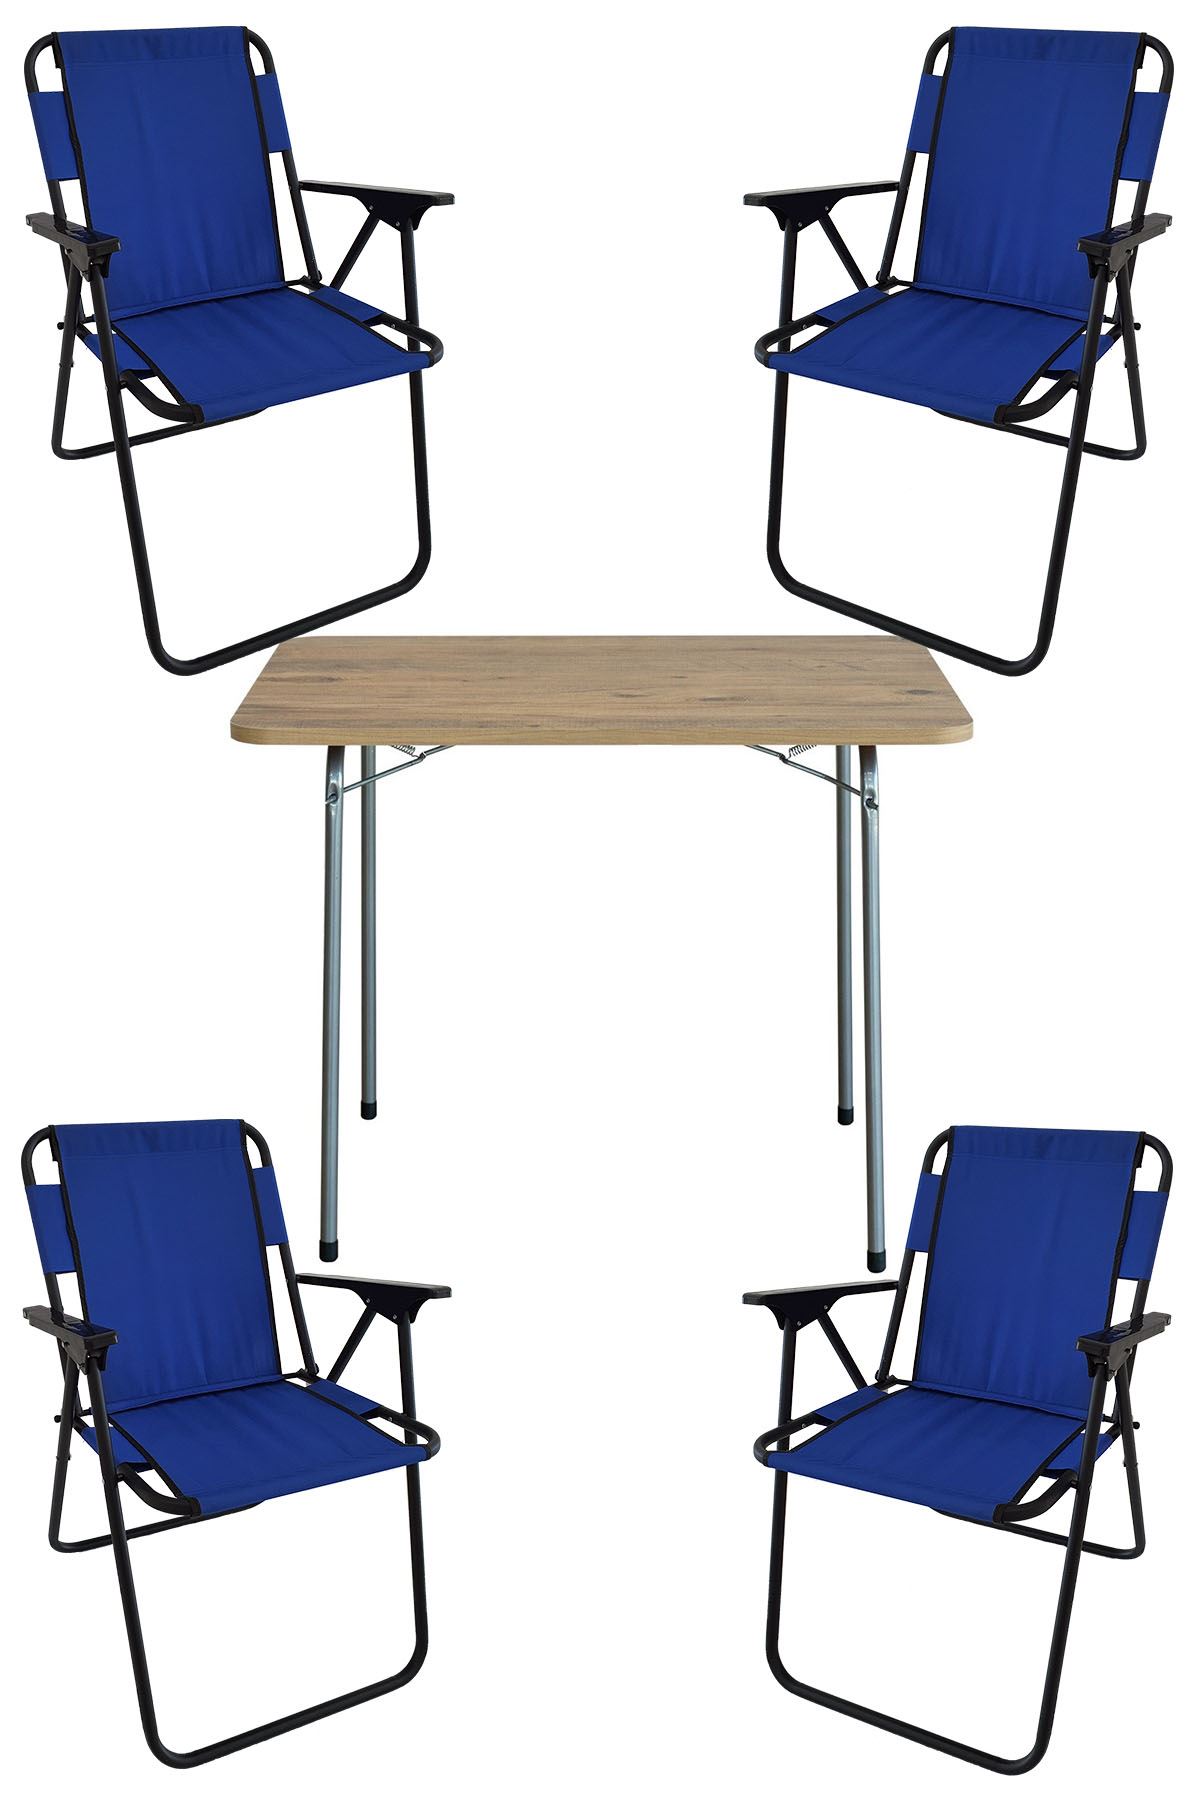 Bofigo 60X80 Çam Desenli Katlanır Masa + 4 Adet Katlanır Sandalye Kamp Seti Bahçe Takımı Mavi